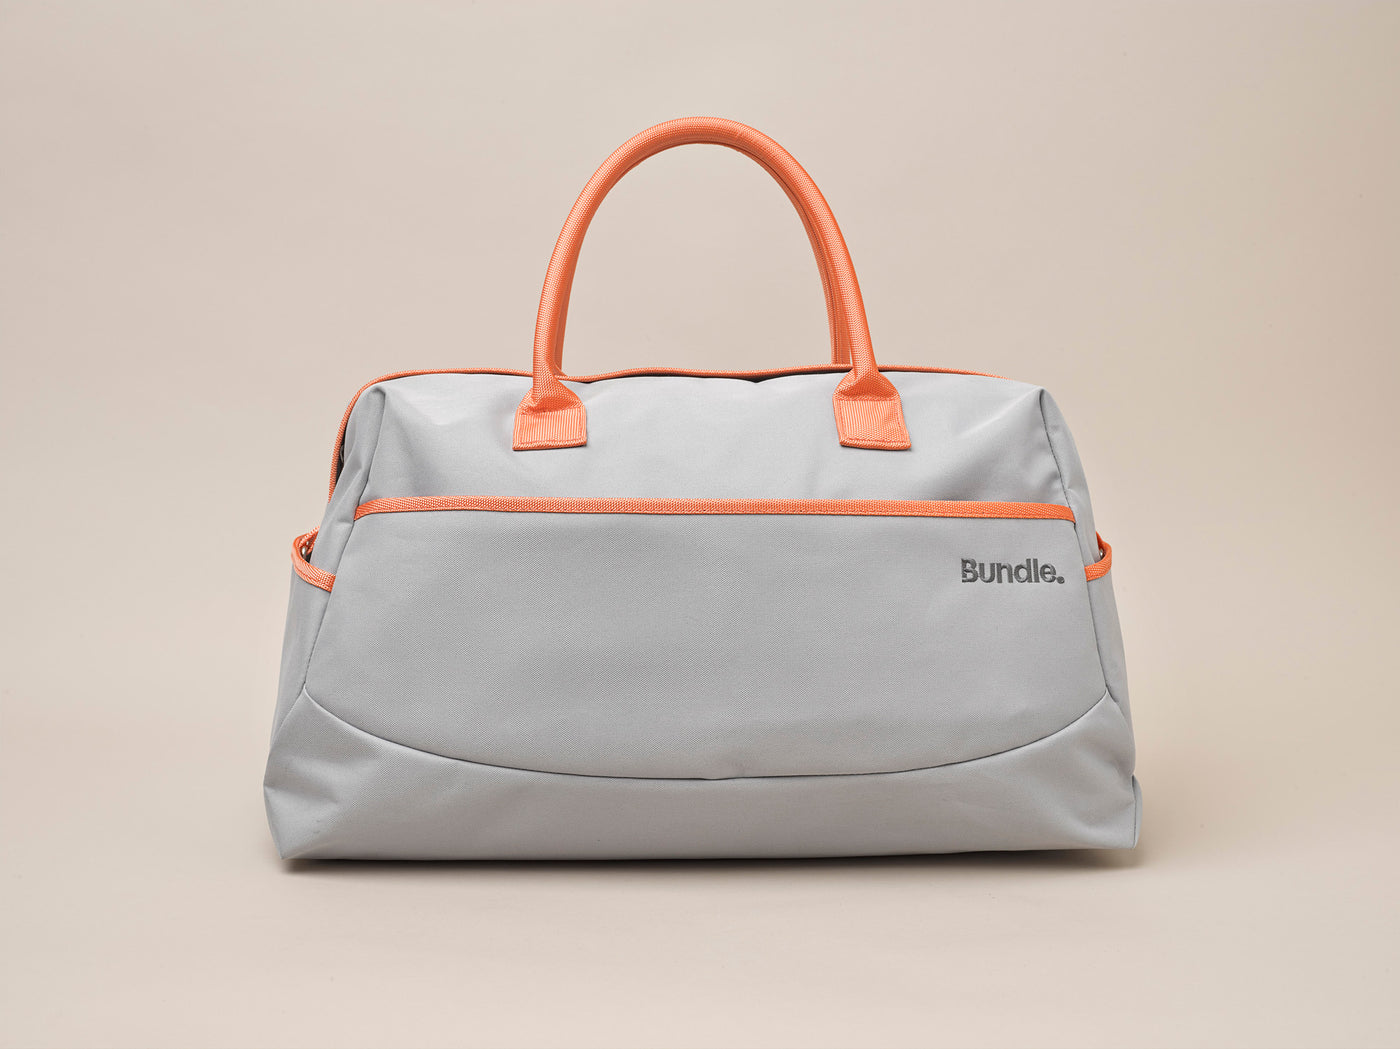 Bundle™ Designer Overnight Bag kit